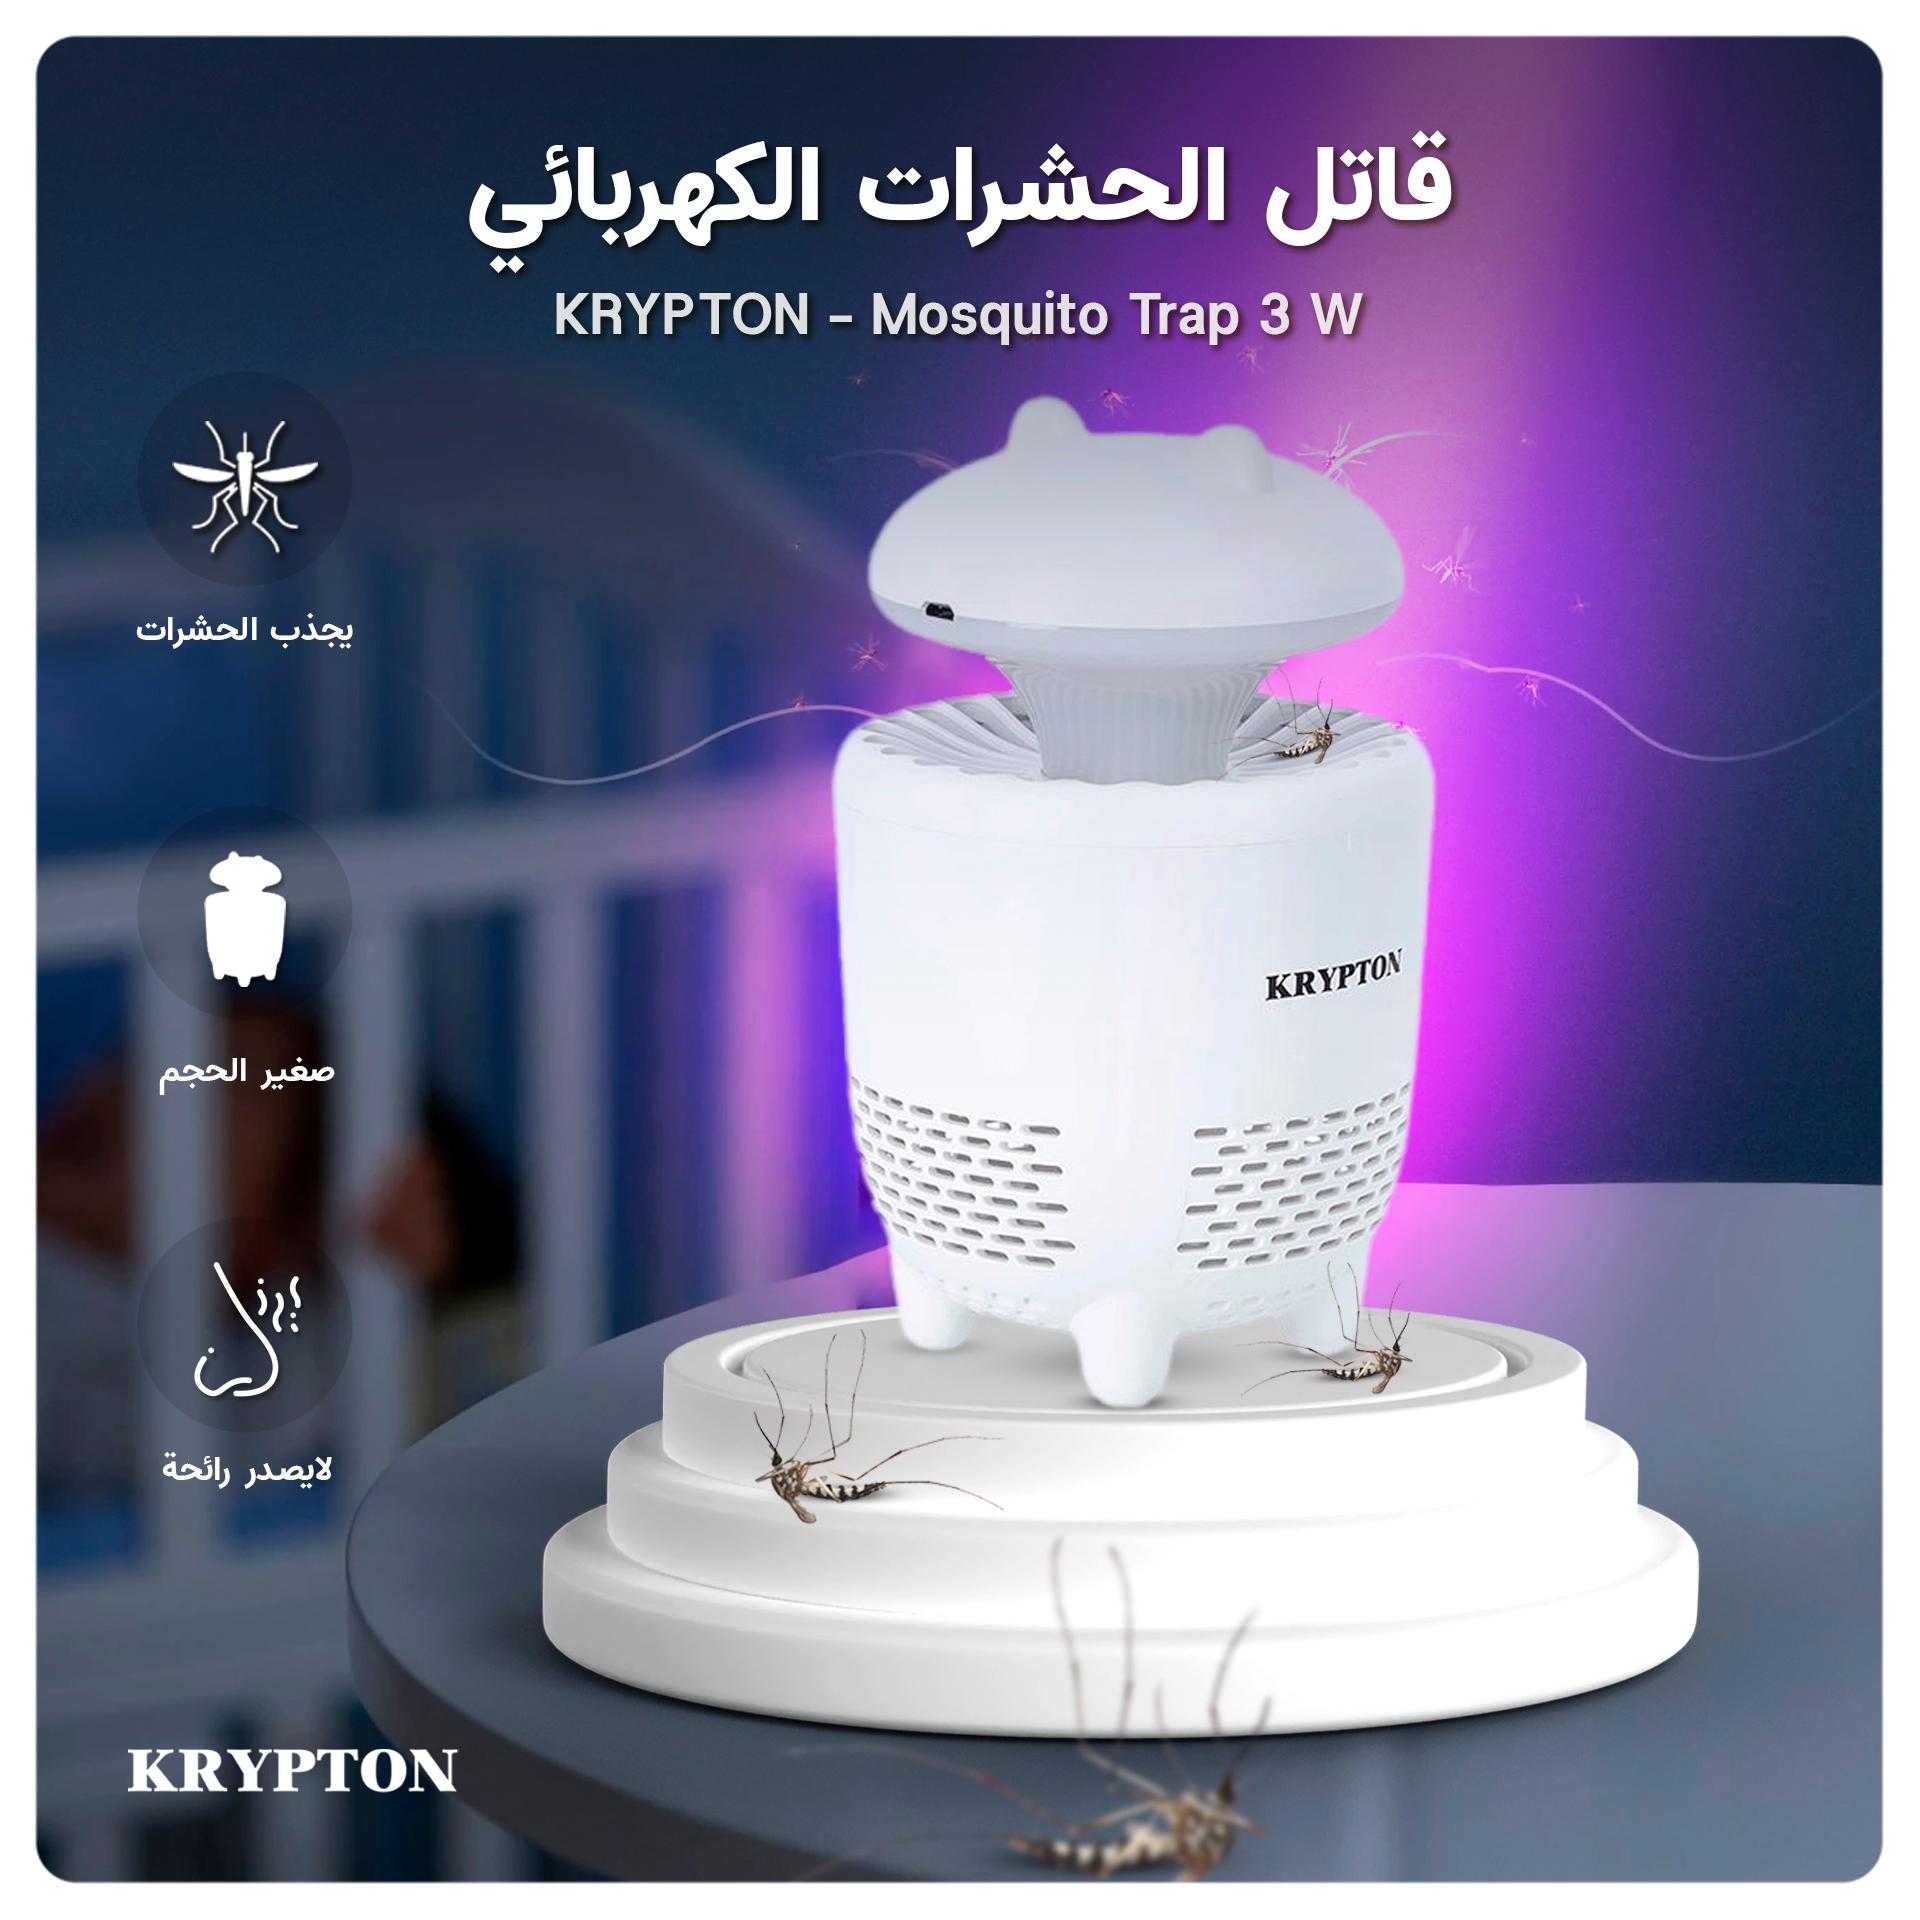 قاتل الحشرات الكهربائي KRYPTON - Mosquito Trap 3 W